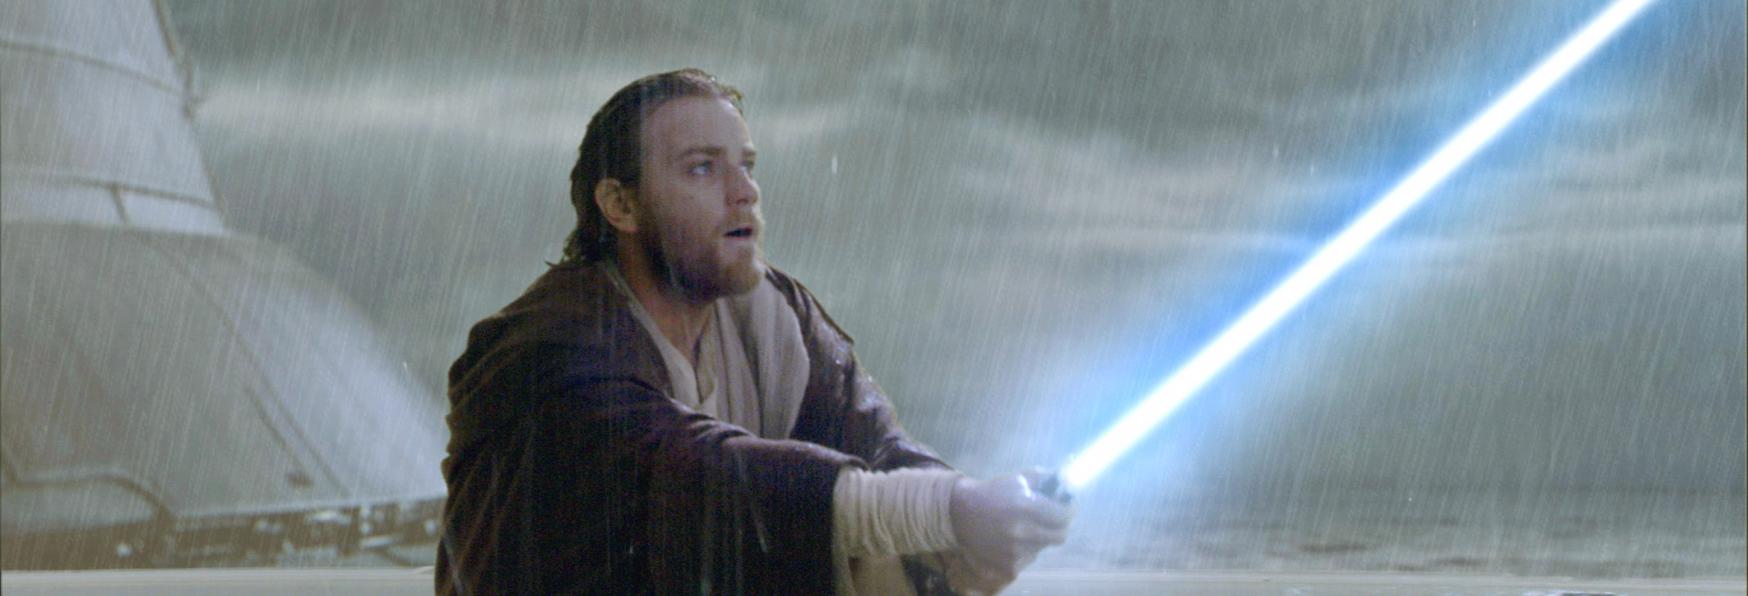 Obi-Wan Kenobi: un Video dal Set della nuova Serie TV ambientata nell'Universo Star Wars